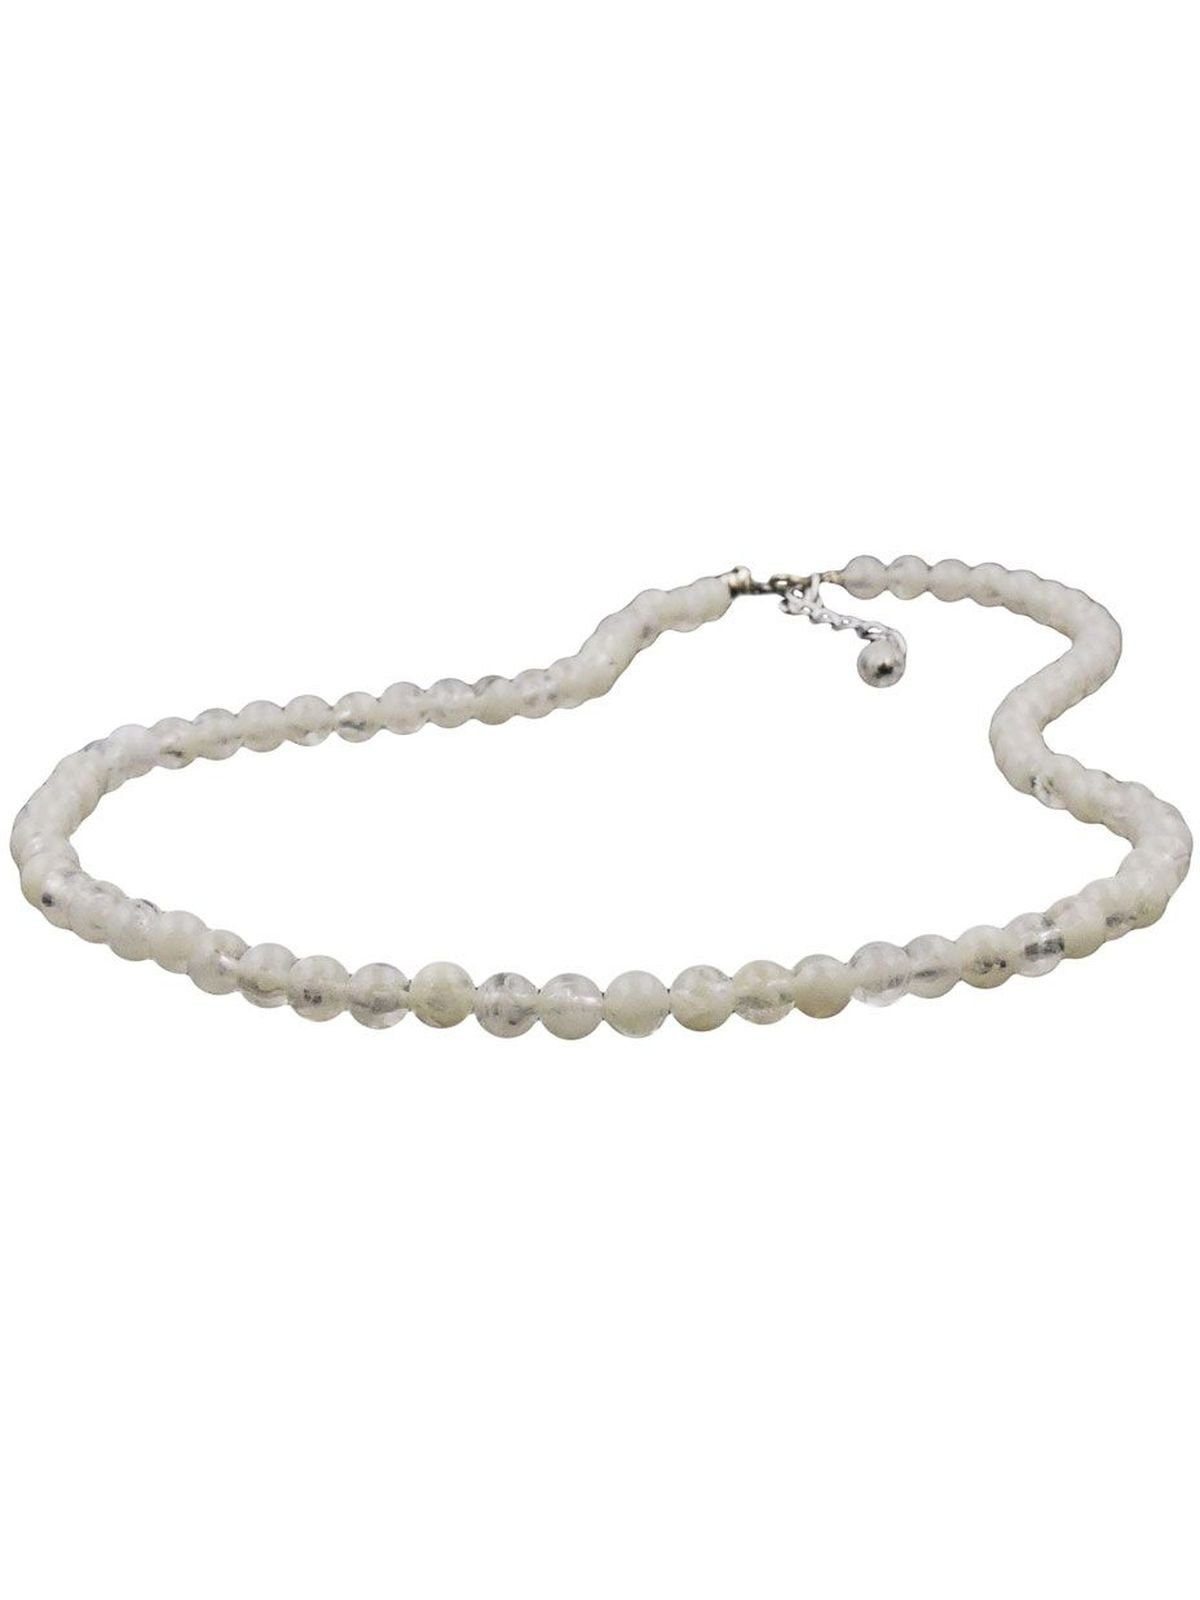 Perlenkette 42 cm lang mit Karabiner chmuck Ketten Perlenketten 